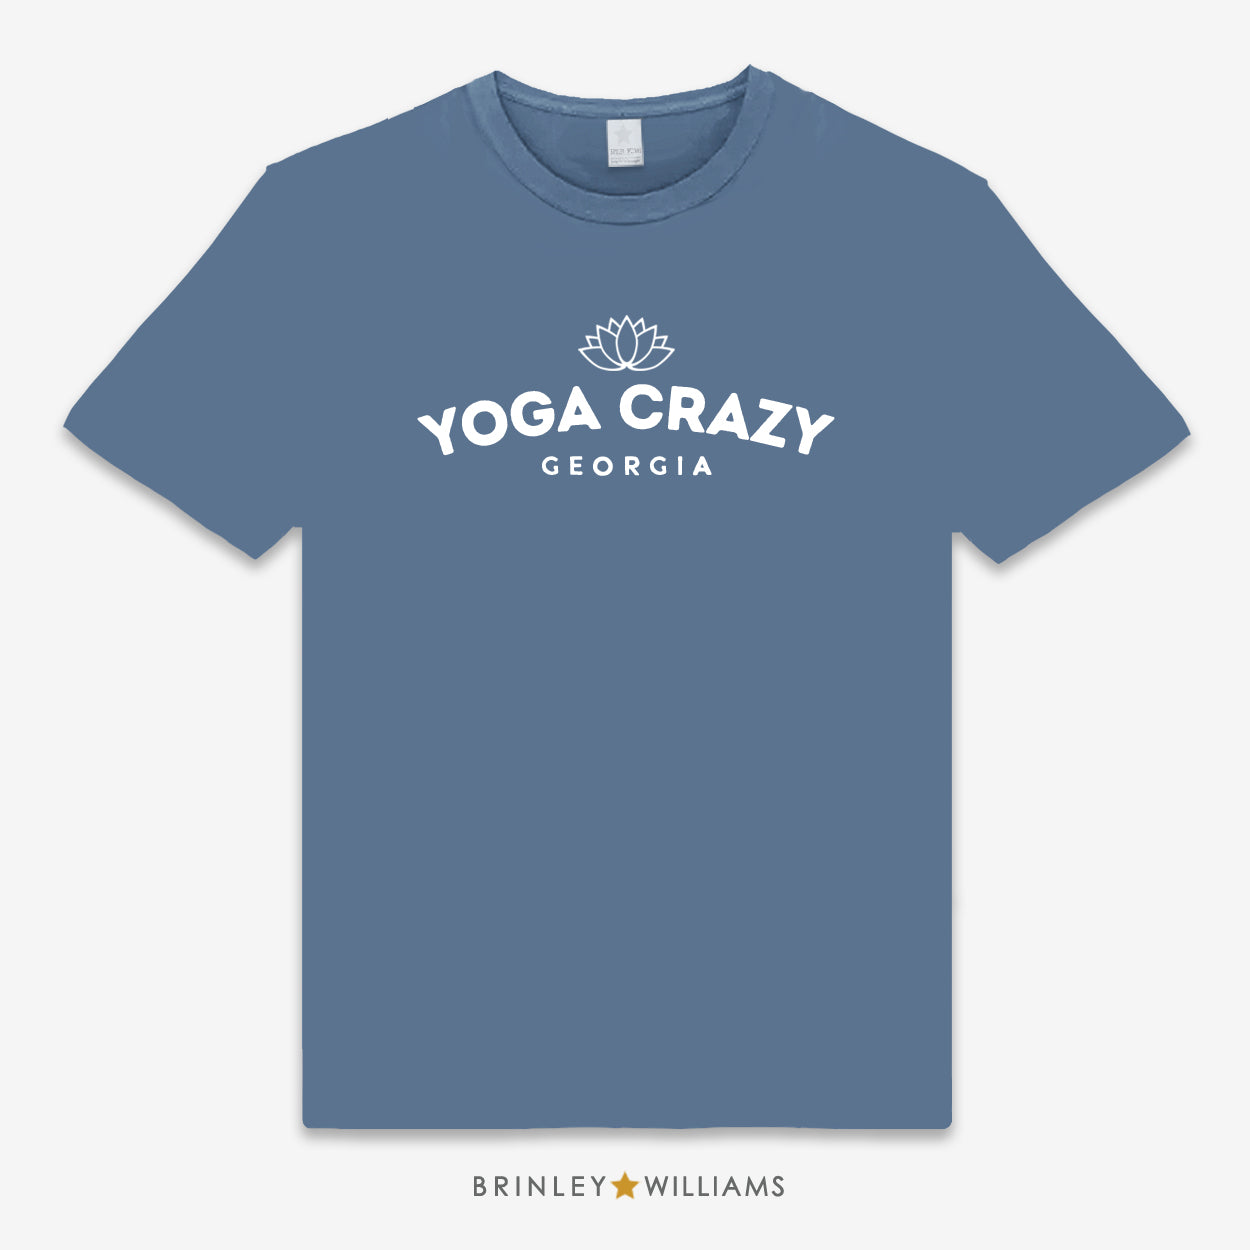 Yoga Crazy Personalised Unisex Classic T-shirt - Indigo